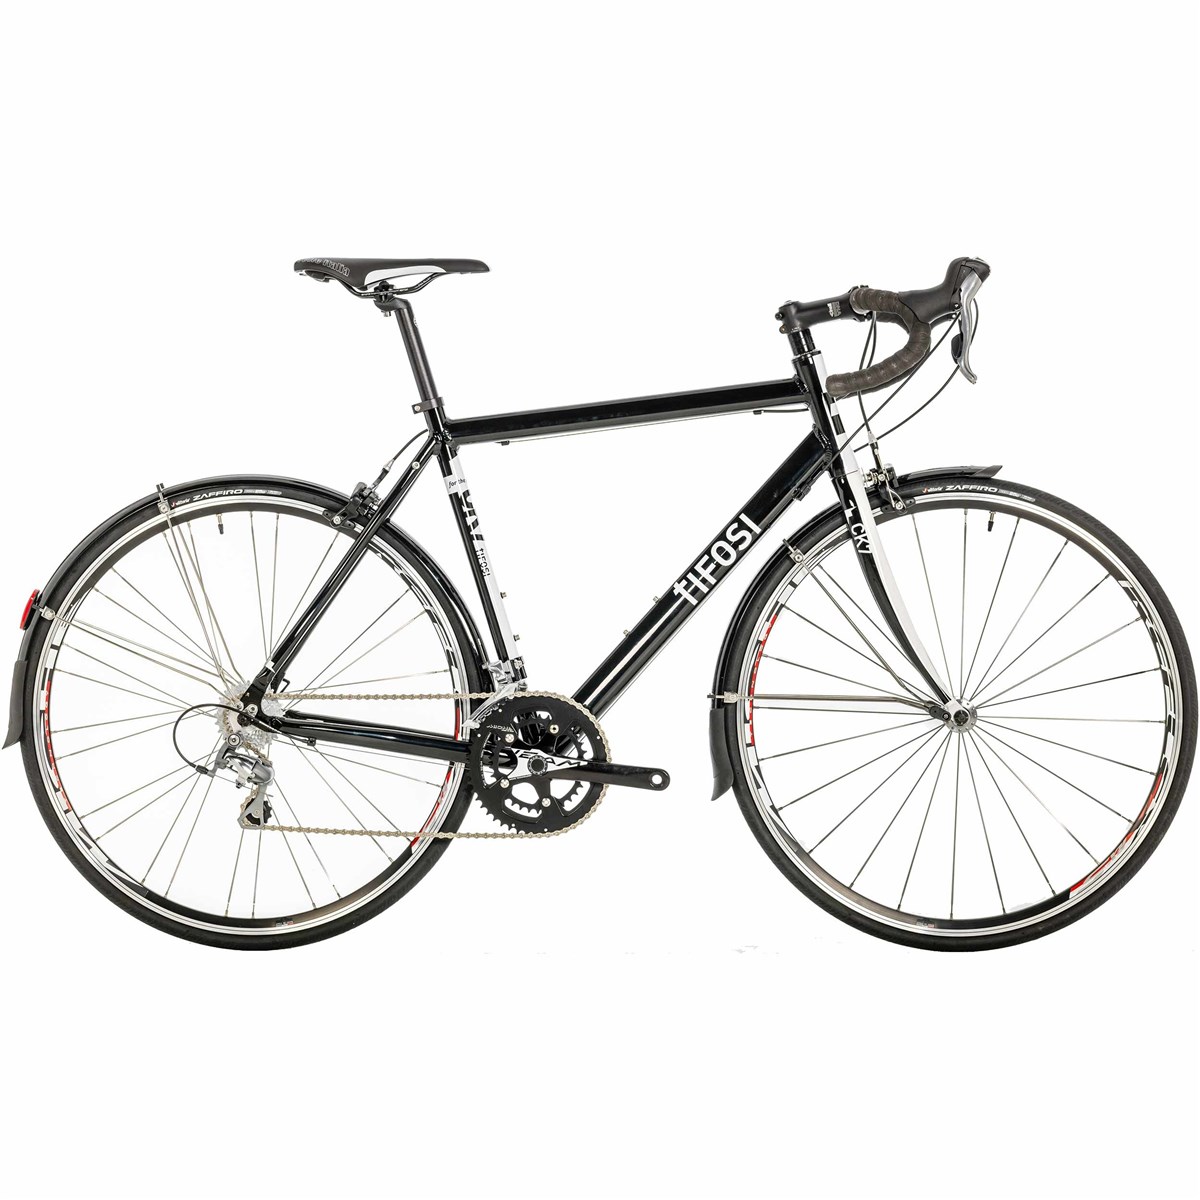 Tifosi CK7 Gran Fondo Tiagra 2016 - Touring Bike product image